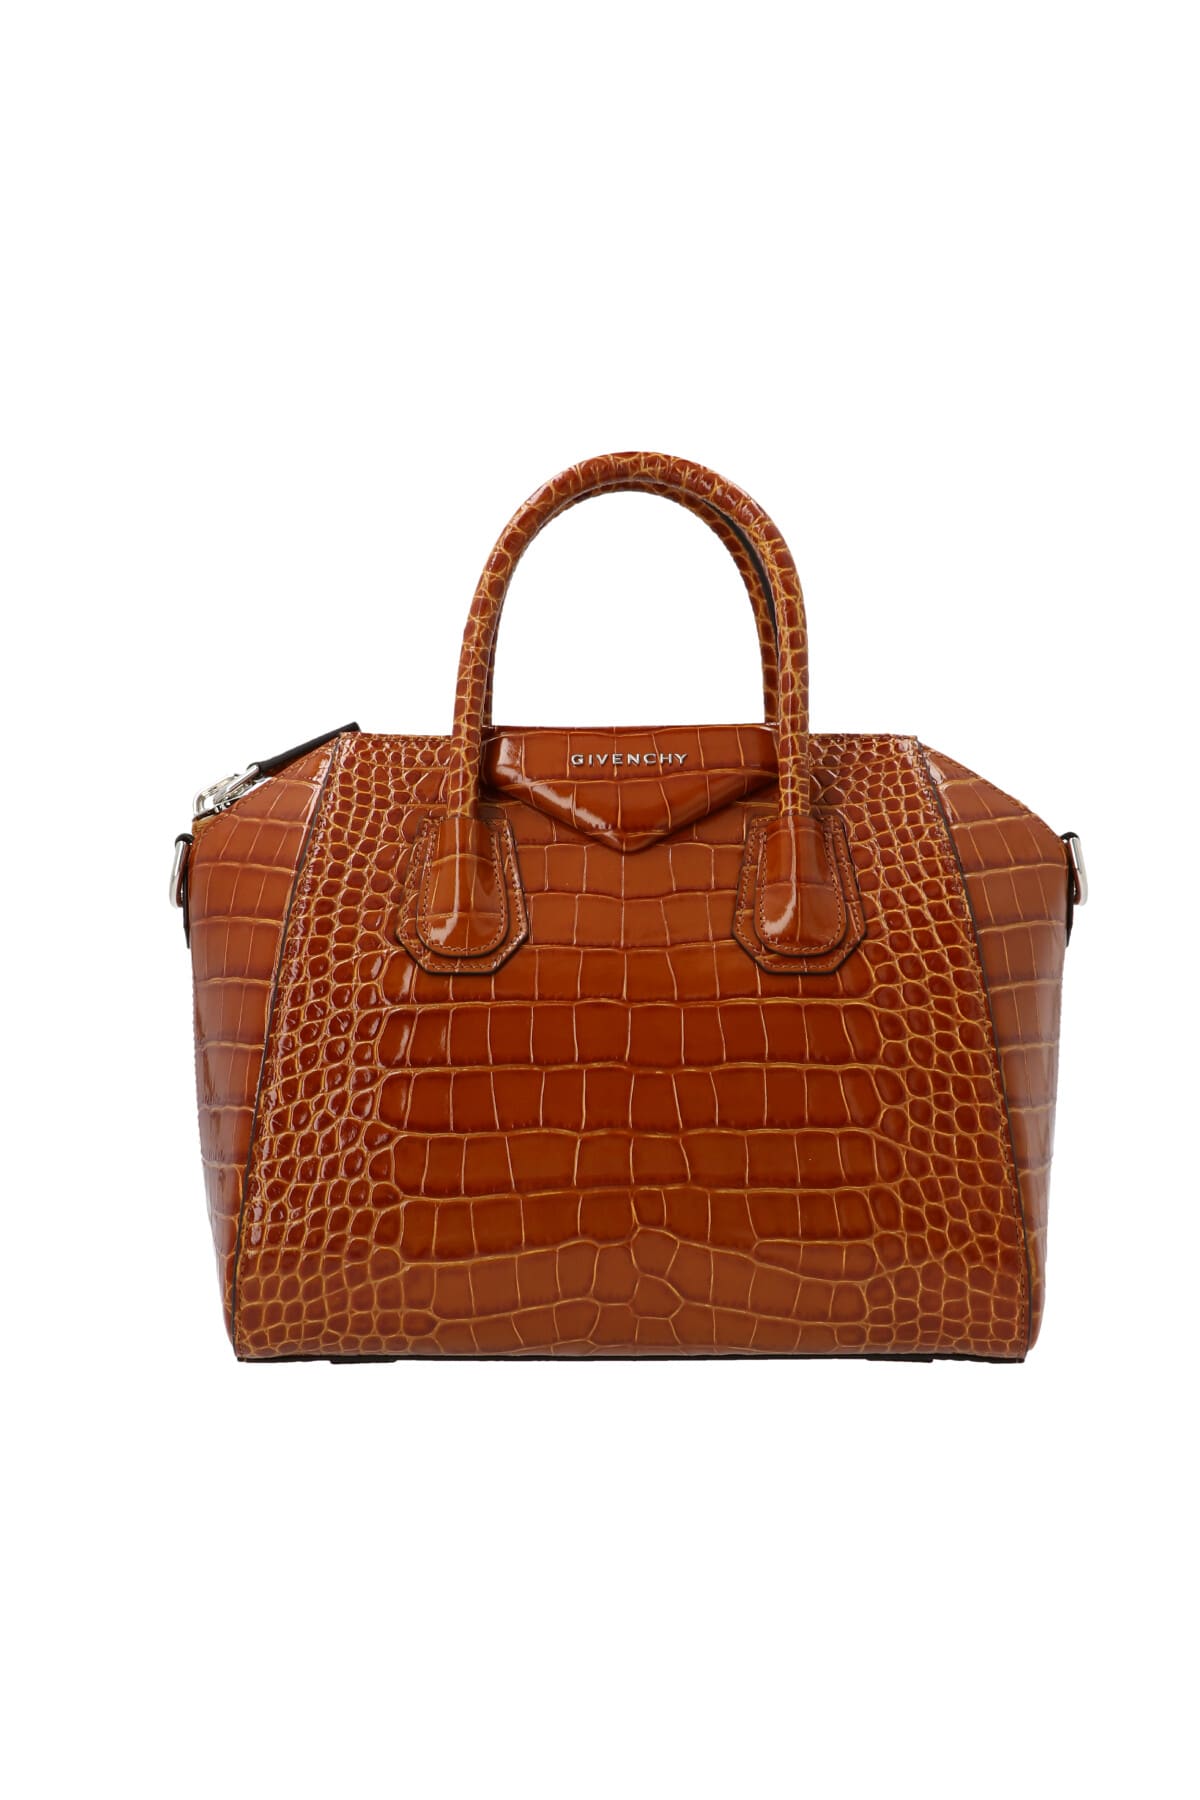 Givenchy Antigona Bag In Brown